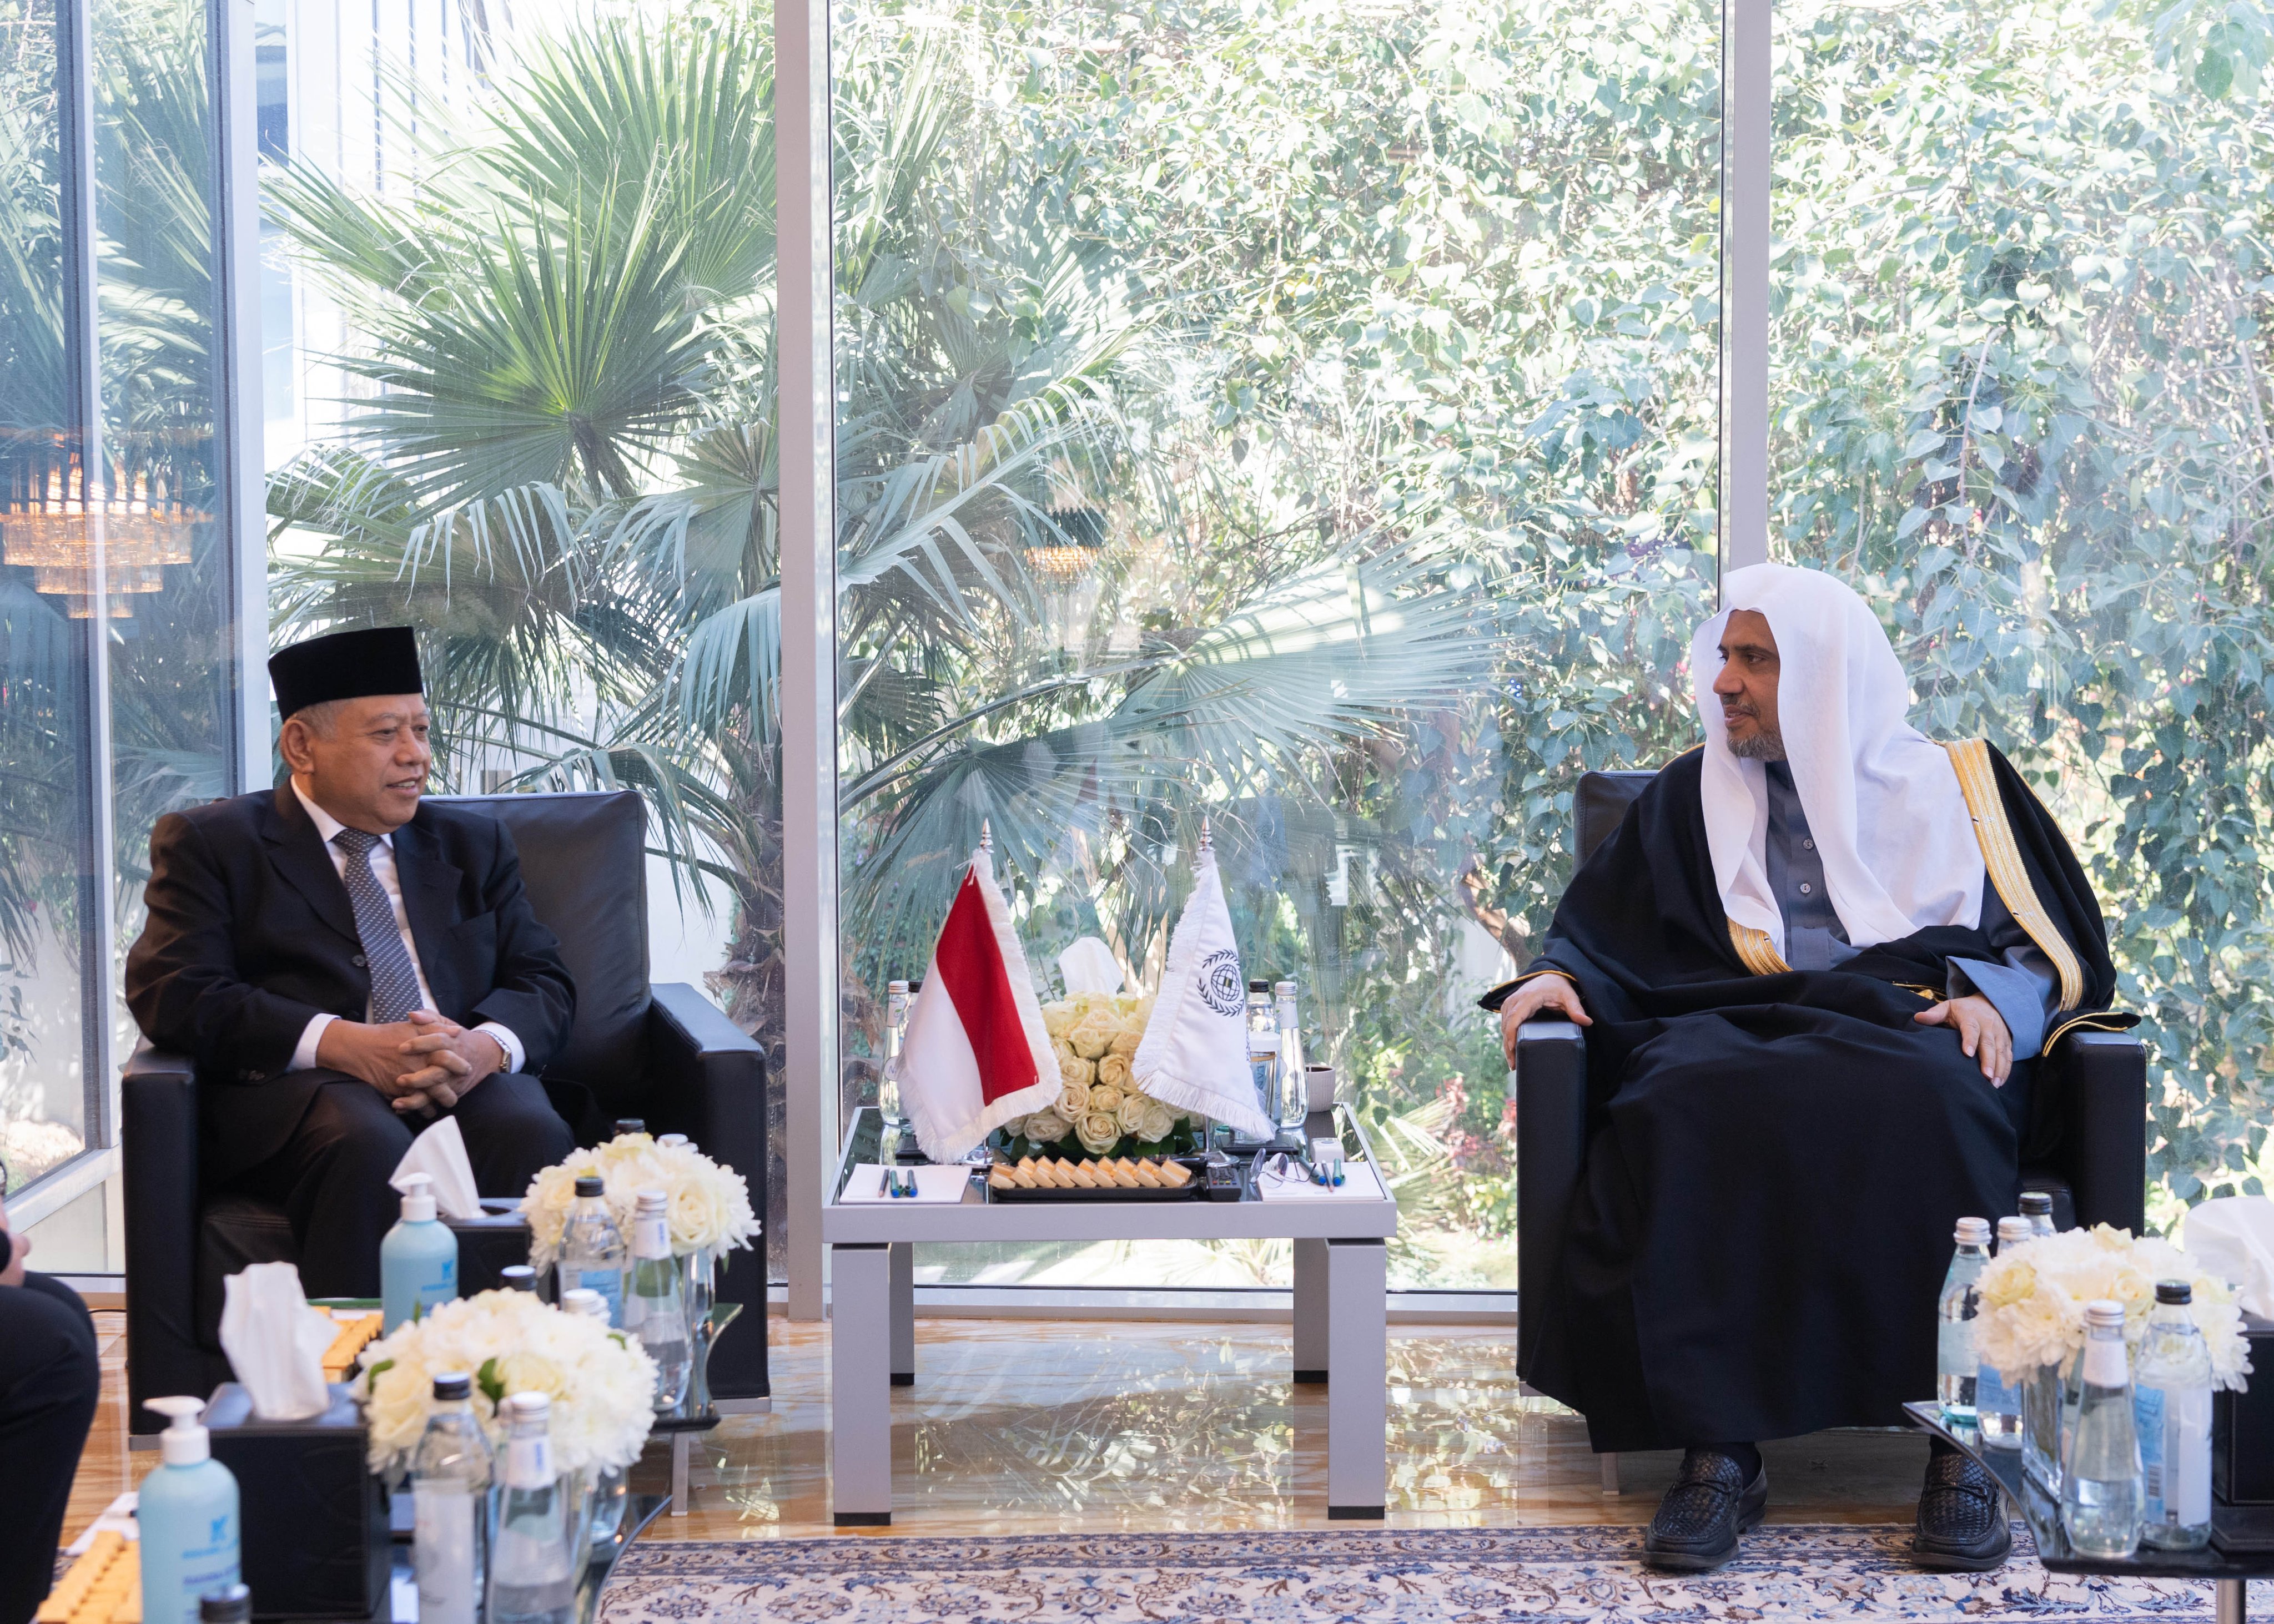 Siang hari ini, Yang Mulia Syekh Dr. Mohammed AlIssa bertemu dengan Yang Mulia Duta Besar Republik Indonesia di Kerajaan Arab Saudi, Dr. Abdulaziz Ahmad